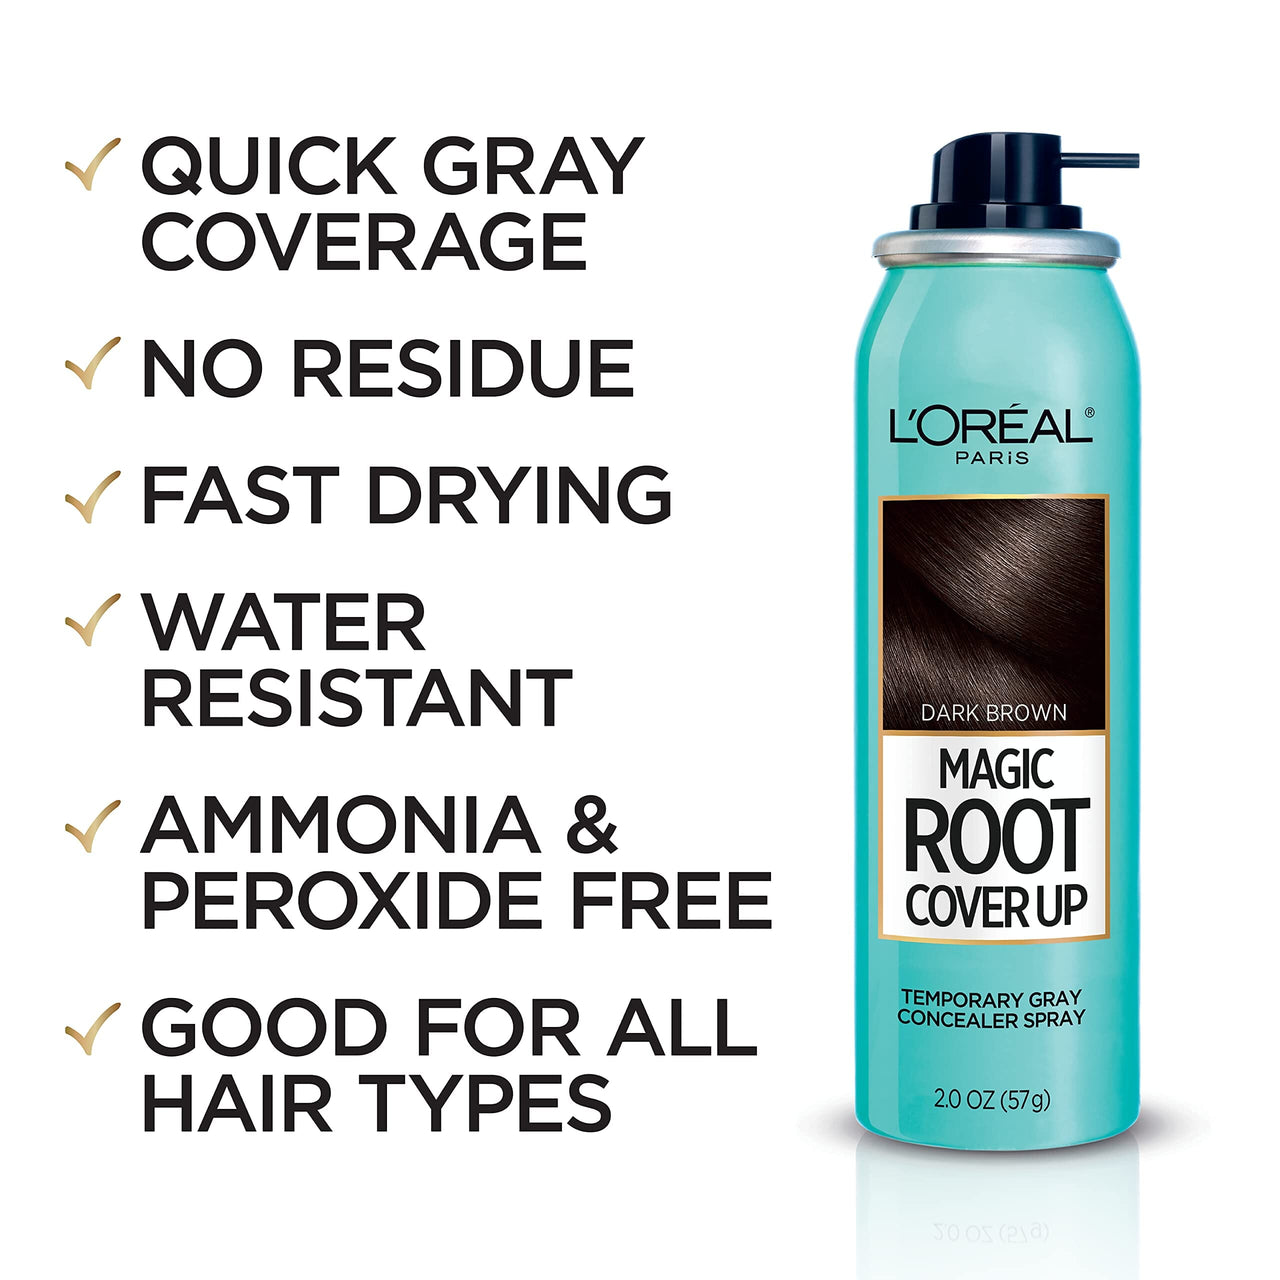 L’Oréal Paris L'Oreal Paris Magic Root Cover Up Gray Concealer Spray Dark Brown 2 oz.